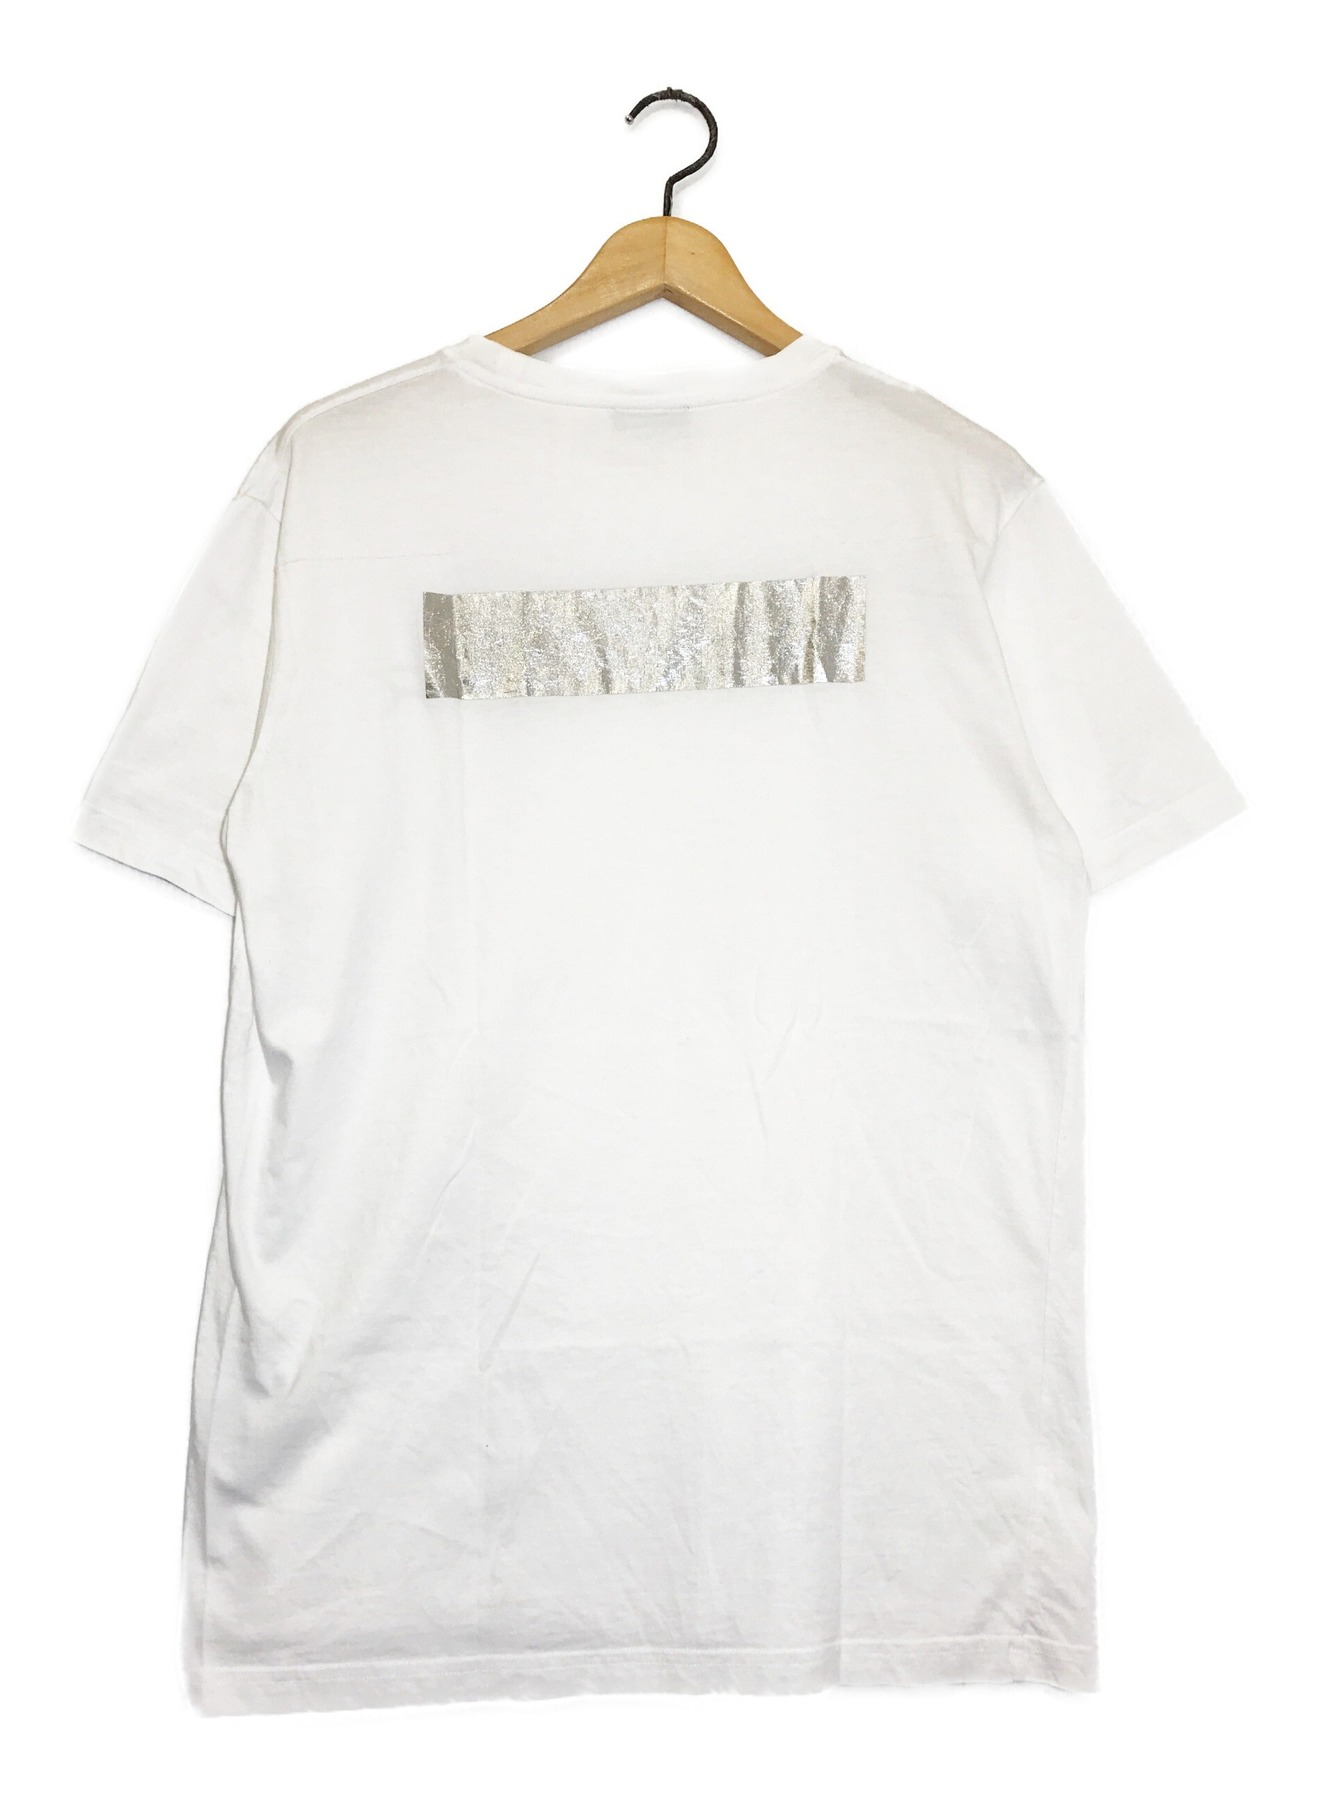 DIOR (ディオール) 空山基ロゴプリントTシャツ ホワイト サイズ:S